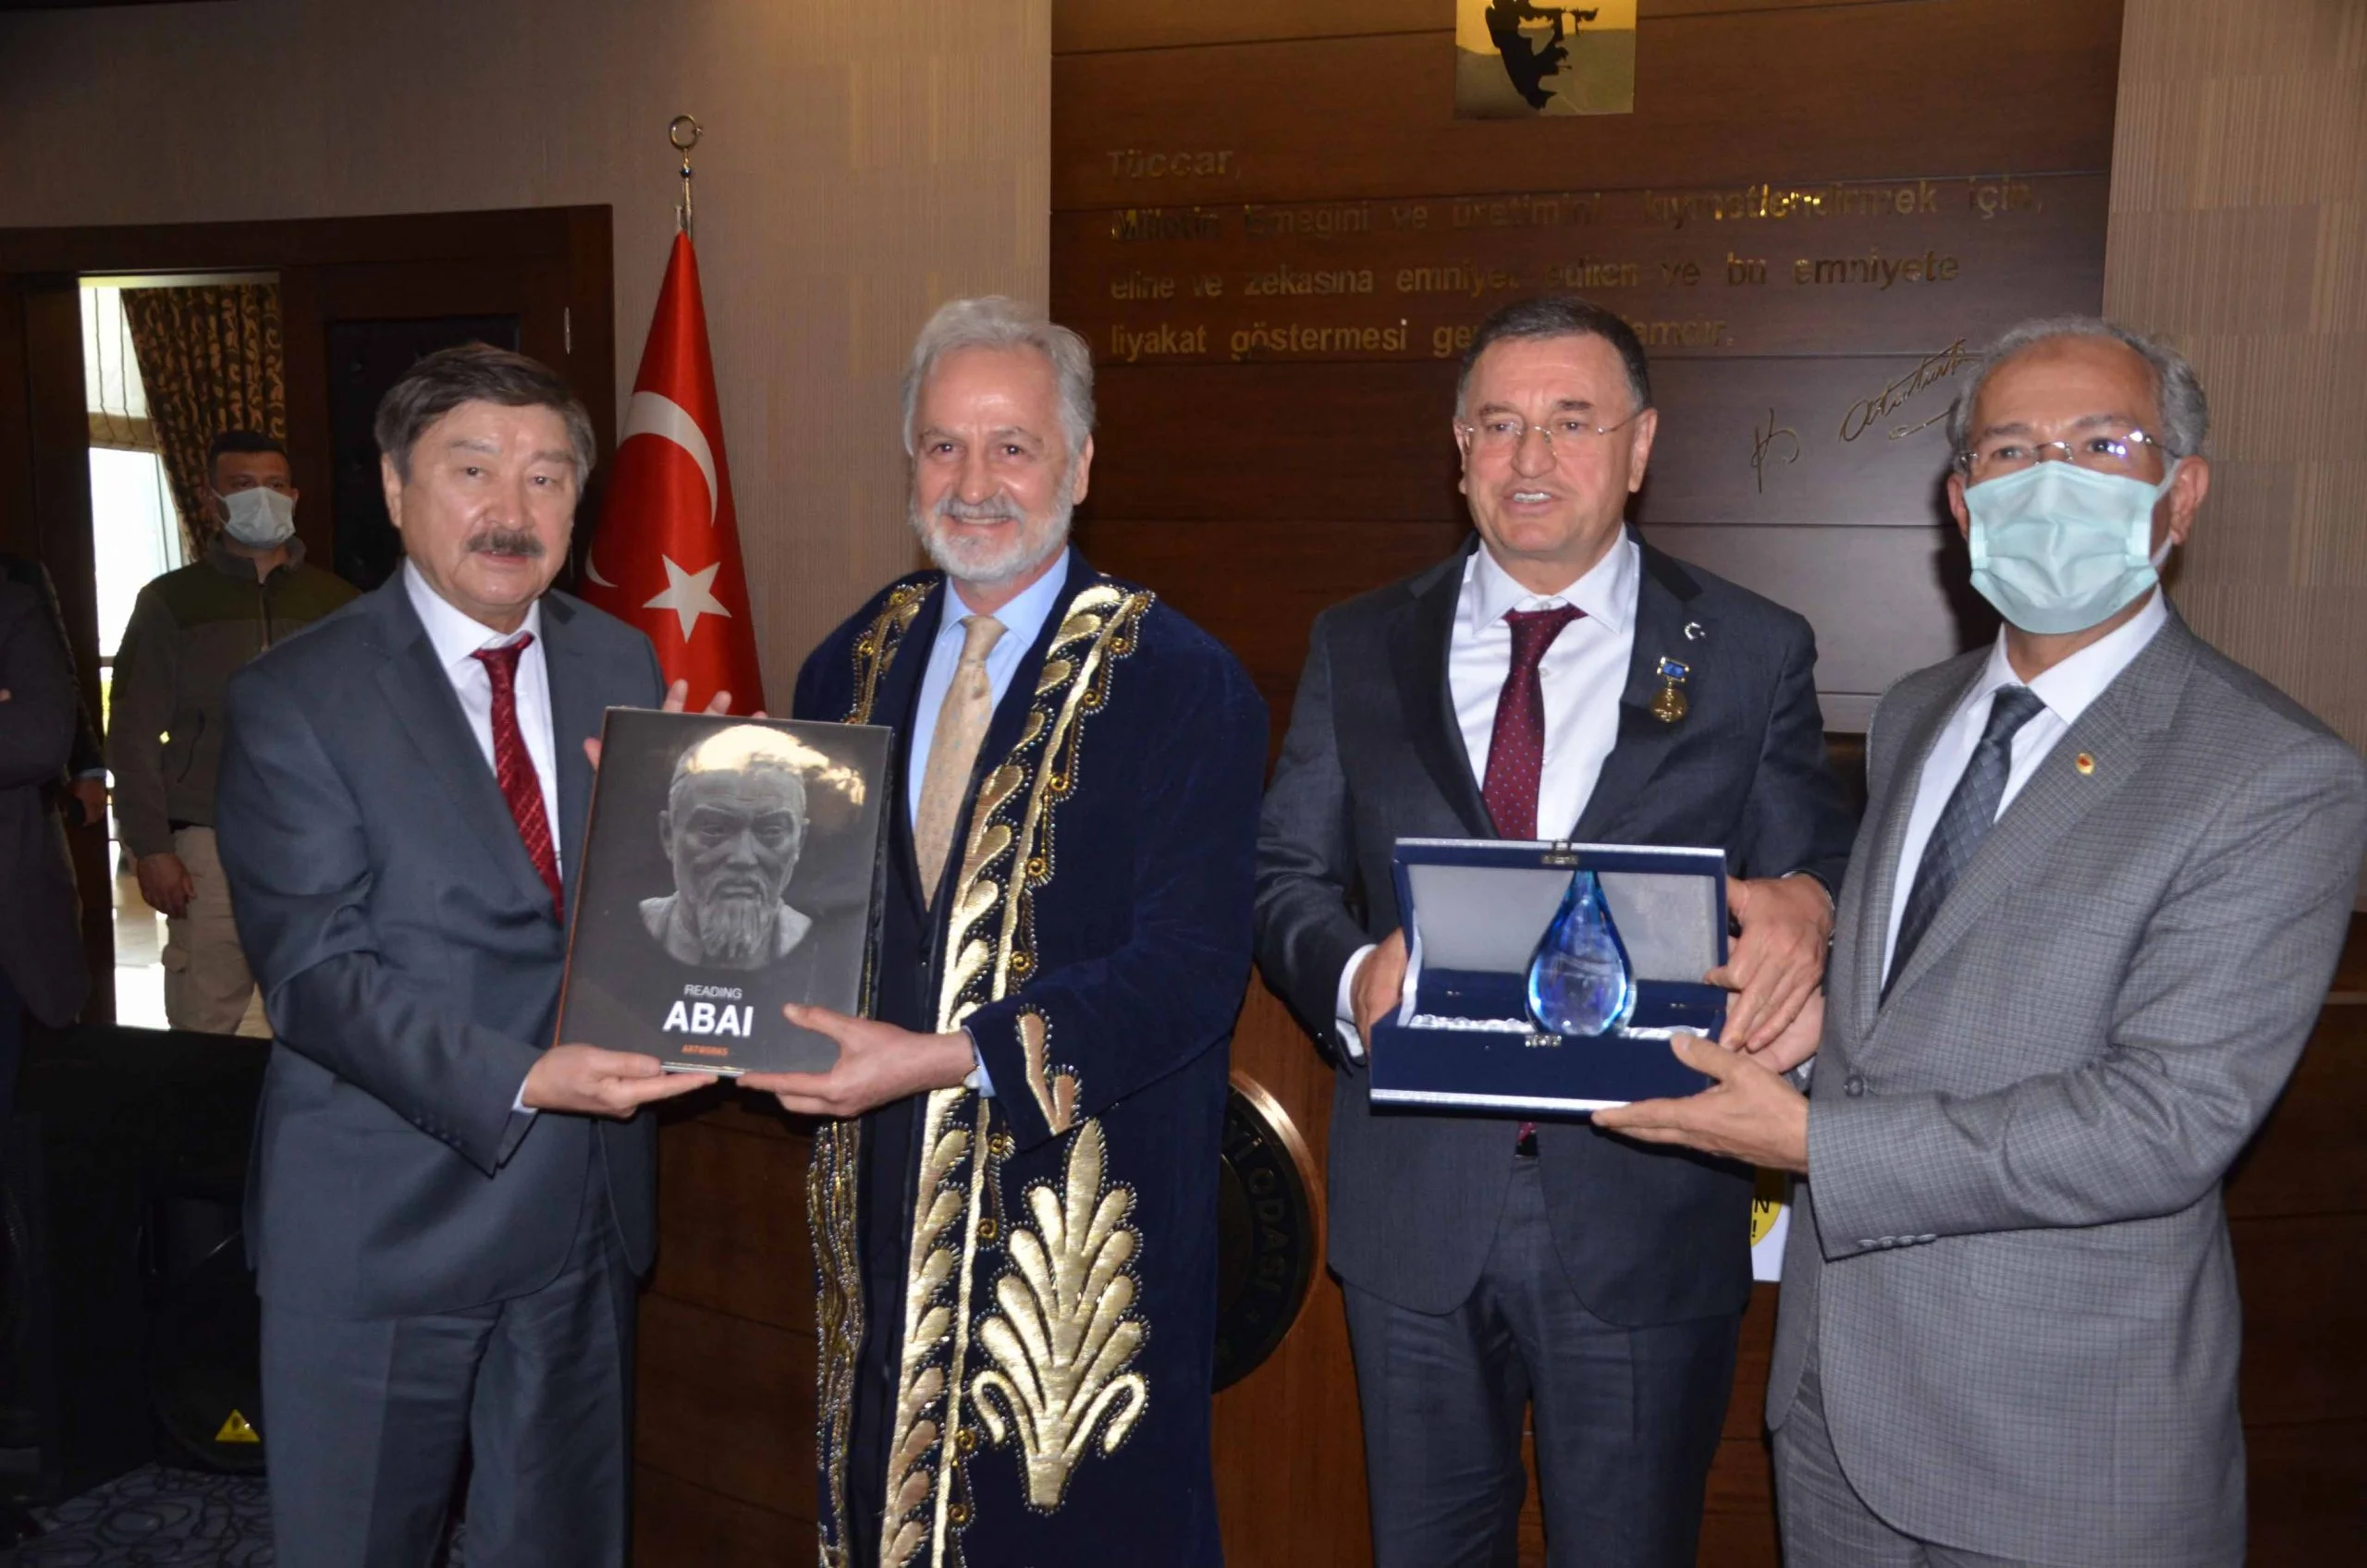 İTSO’da Türki Cumhuriyetlerinin Bağımsızlığının 30. Yıl Dönümü Etkinlikleri Kapsamında, İş Dünyası İle İstişare Toplantısı Düzenlendi